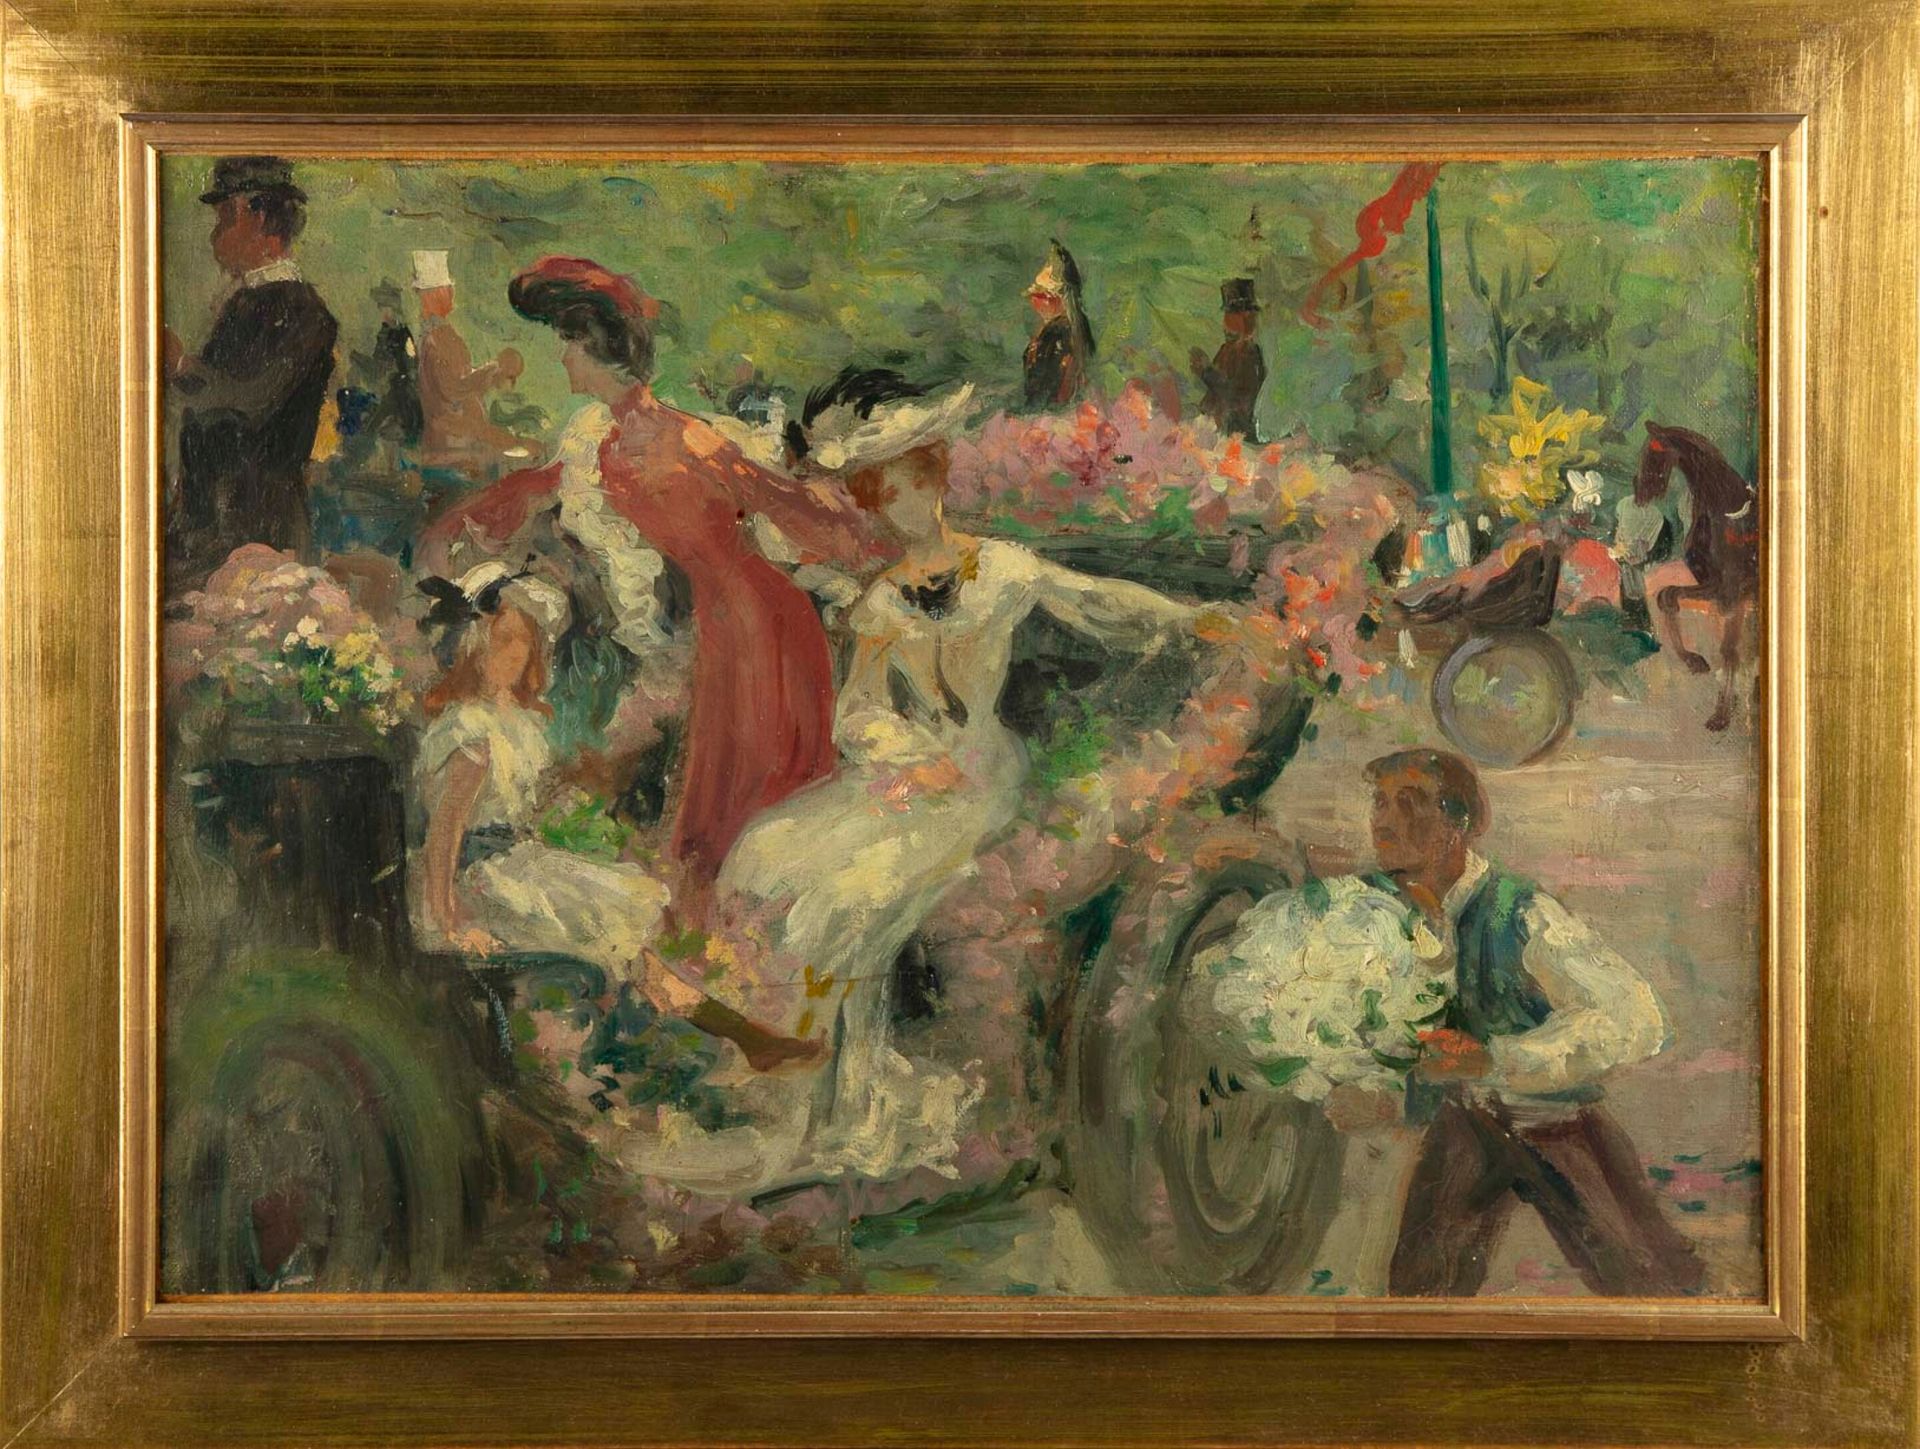 ECOLE FRANCAISE 十九世纪末亨利-卡洛-德尔维勒周围的法国学校

马车和花匠

布面油画

25 x 35厘米左右